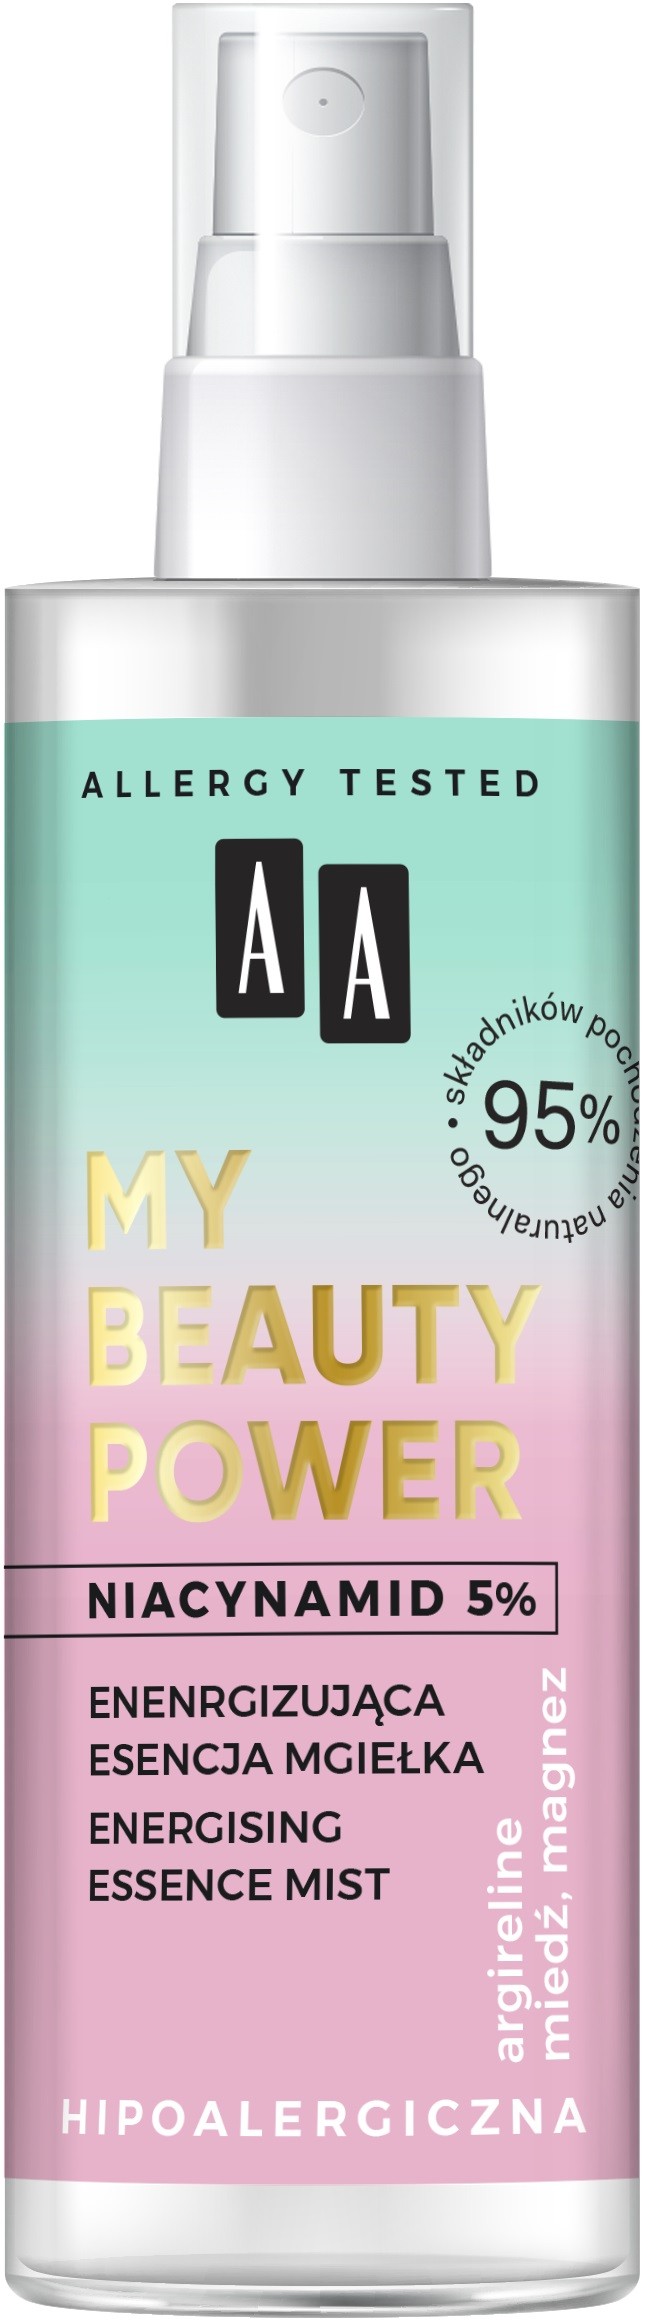 AA My Beauty Power Esencja-mgiełka energizująca do twarzy  100ml